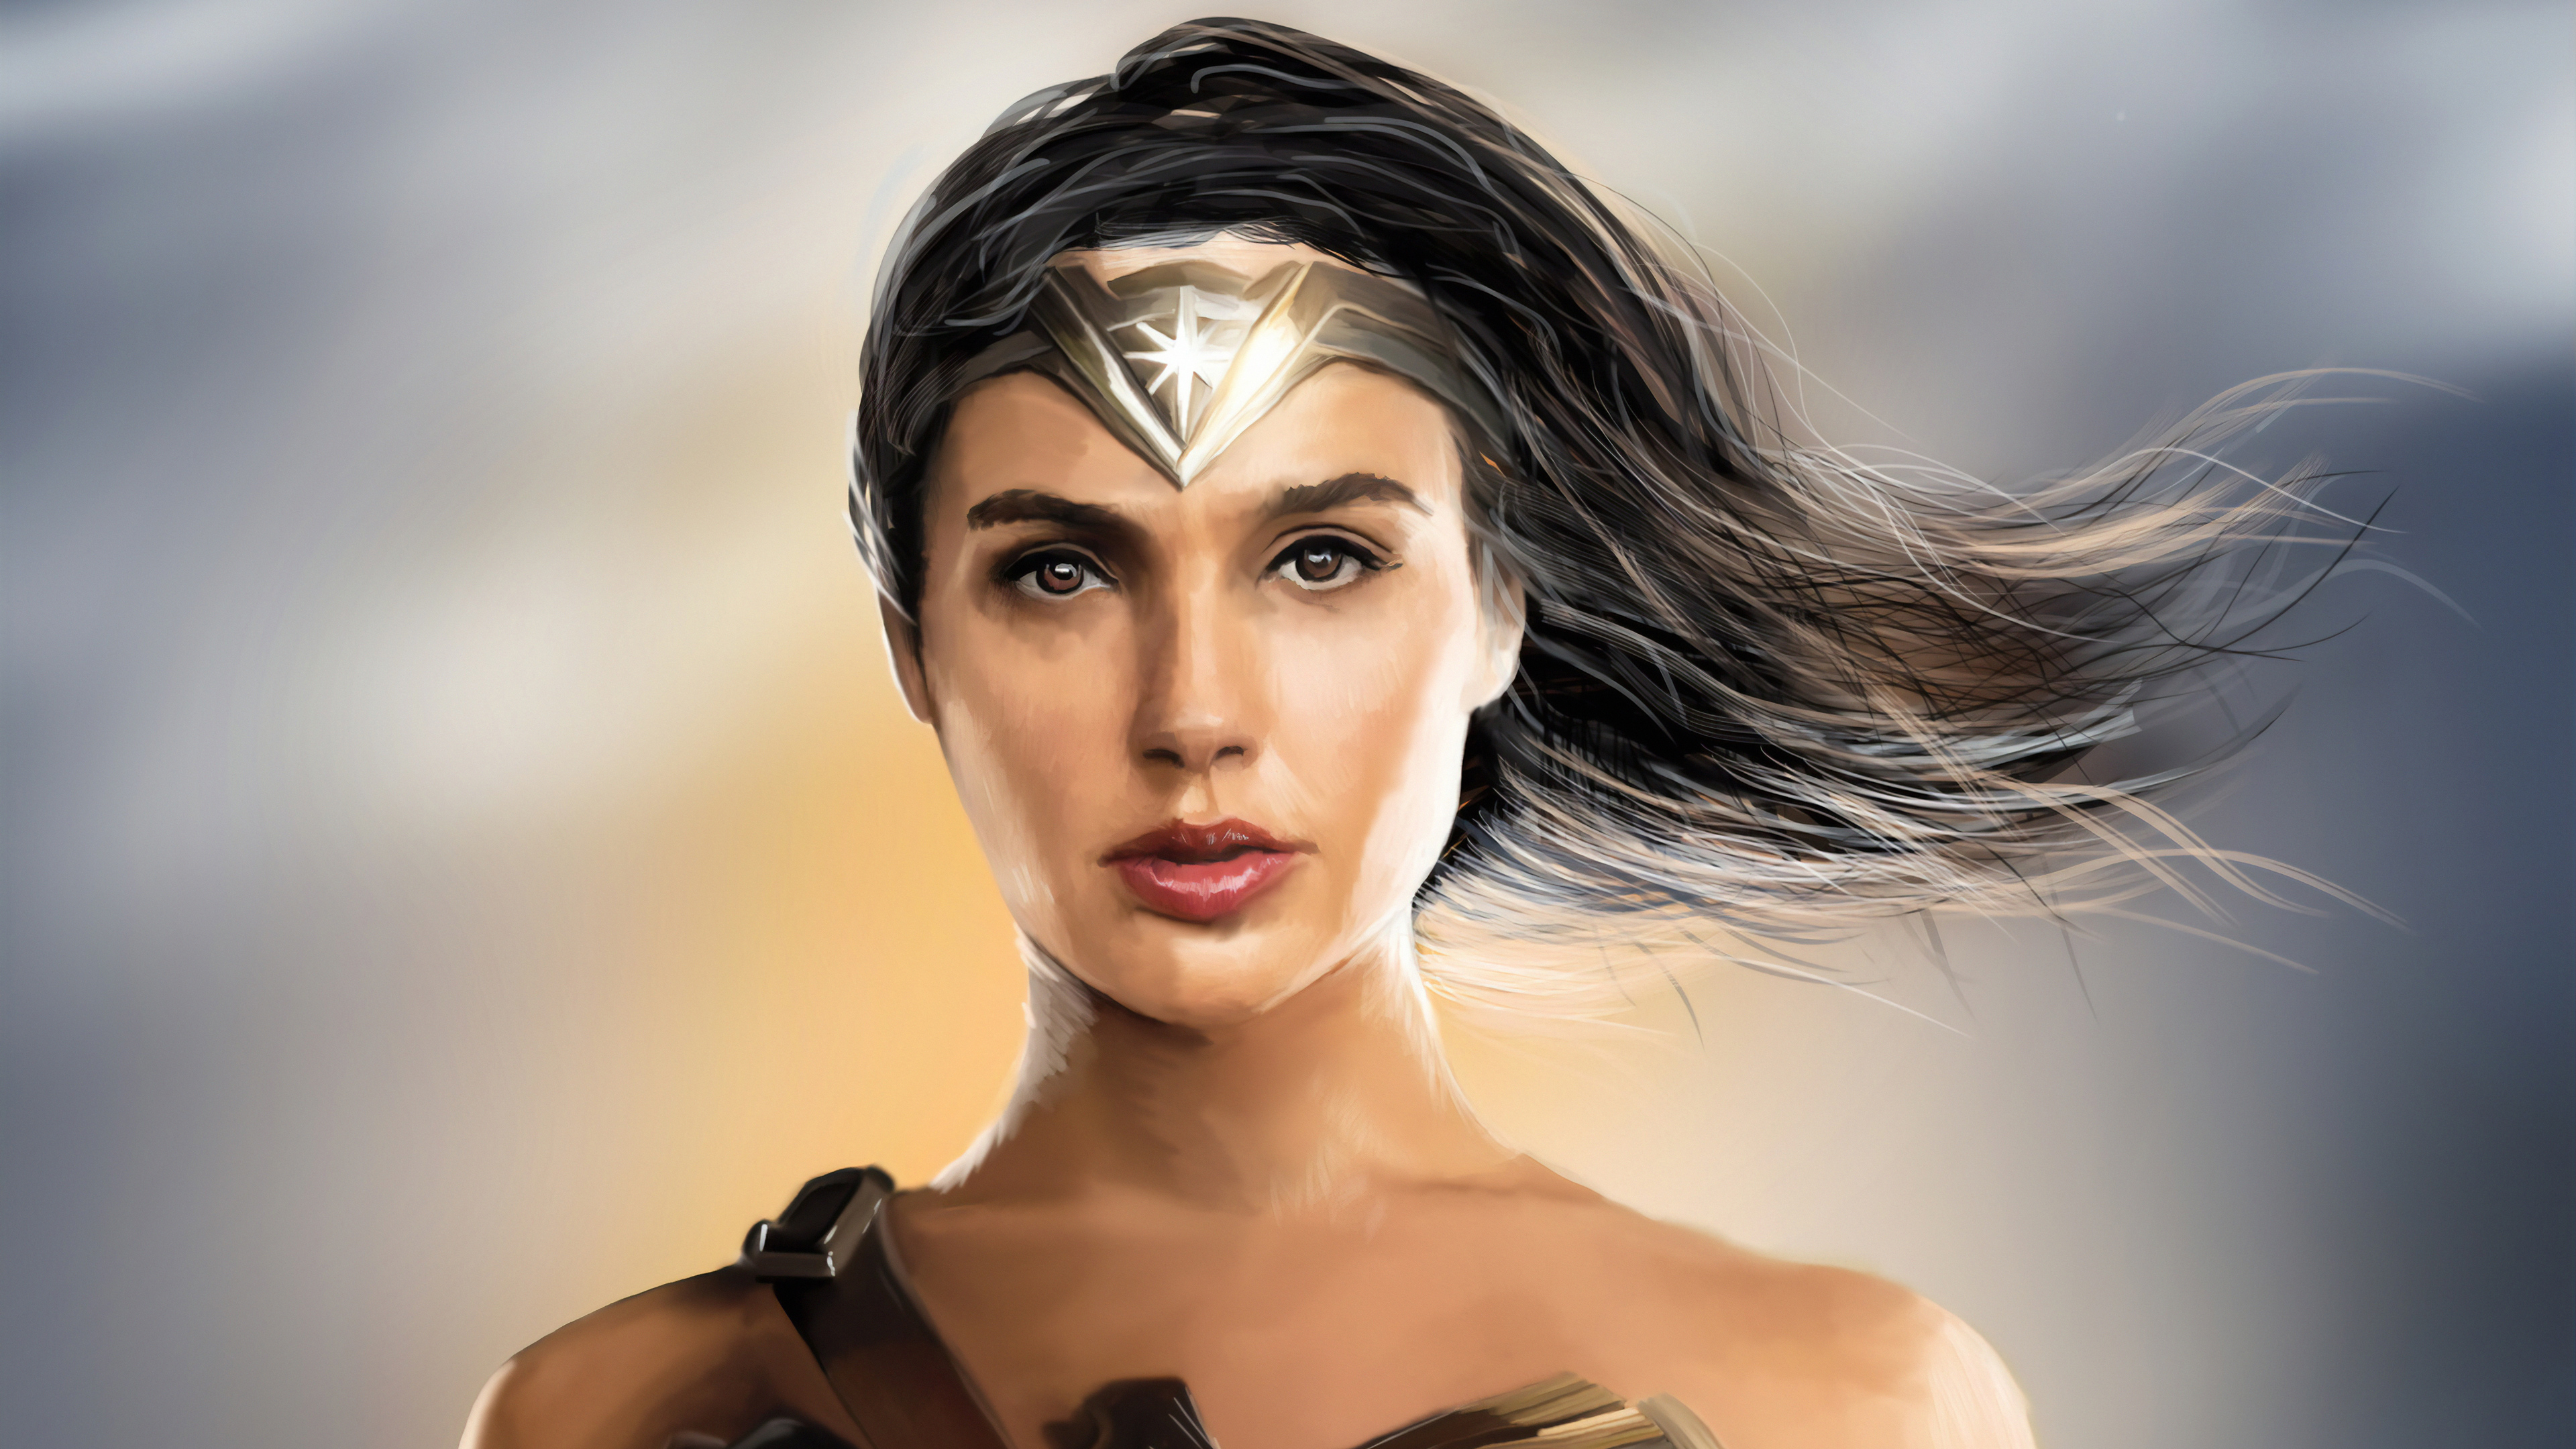 Free download wallpaper Movie, Dc Comics, Wonder Woman, Gal Gadot on your PC desktop